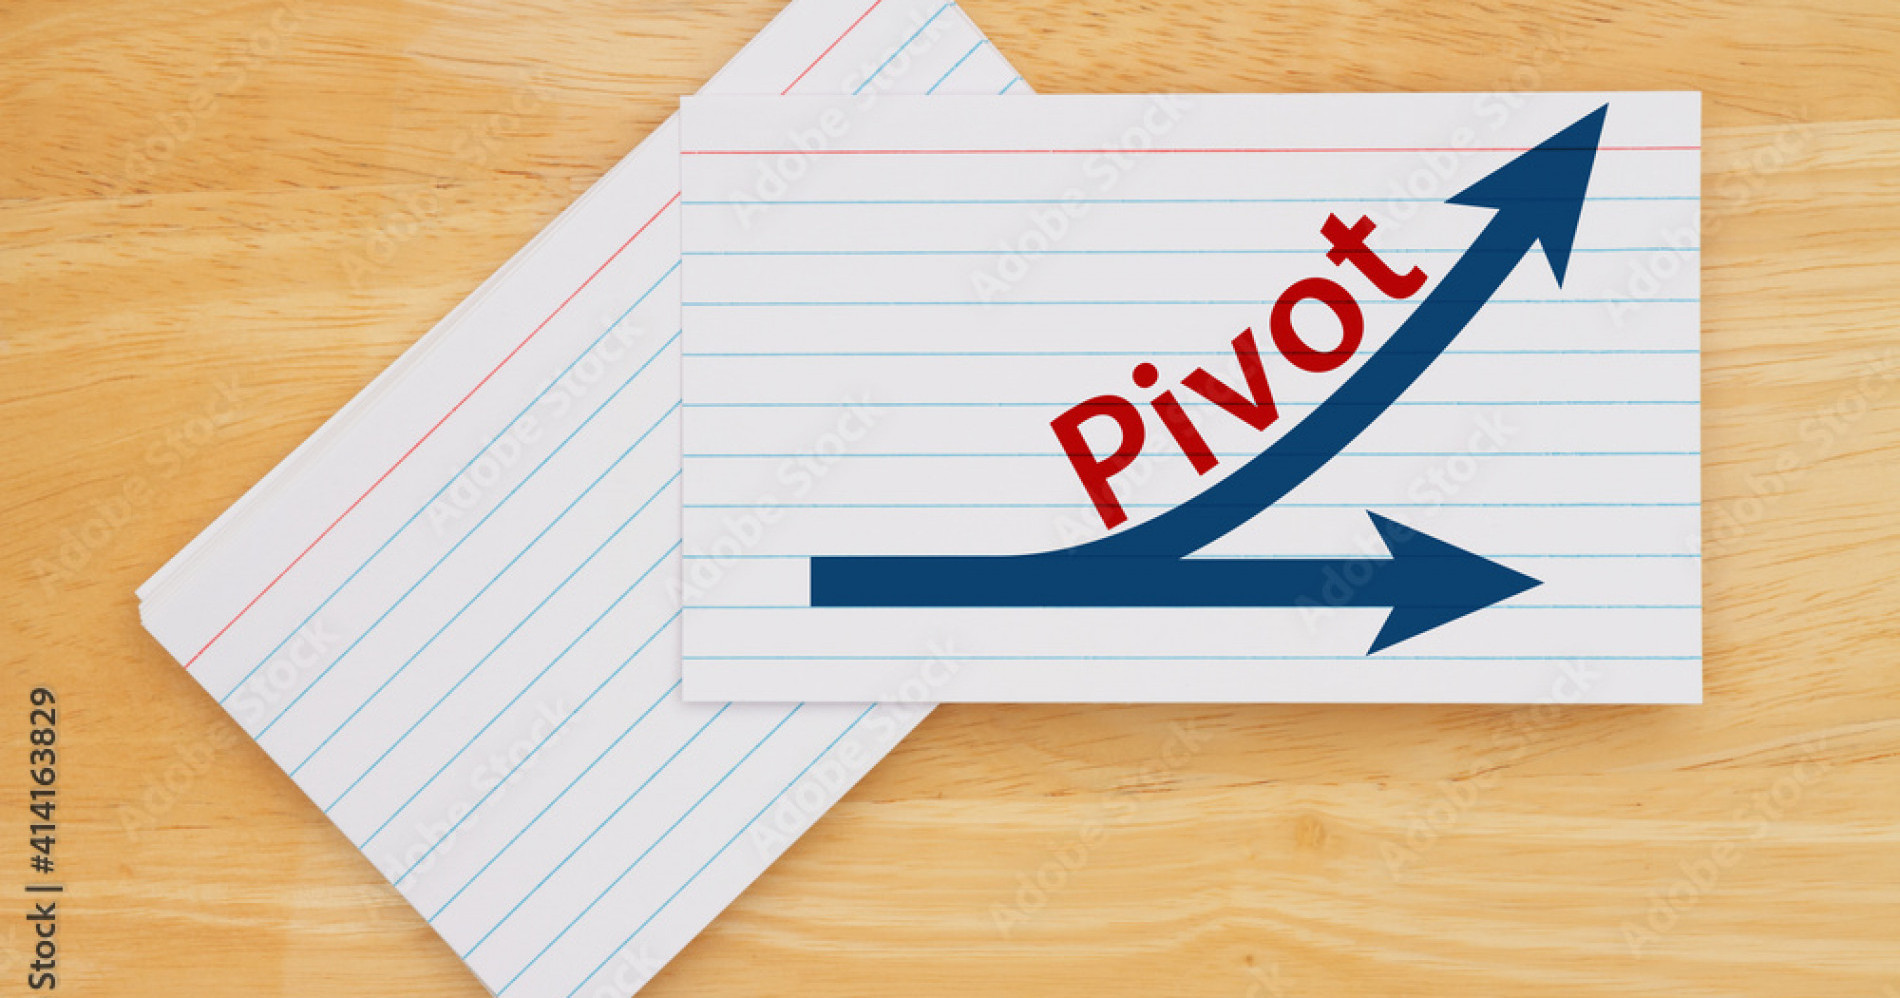 Lakukan pivot jika bisnis sudah tidak relevan dengan pasar (Sumber Gambar: Adobe Stock)